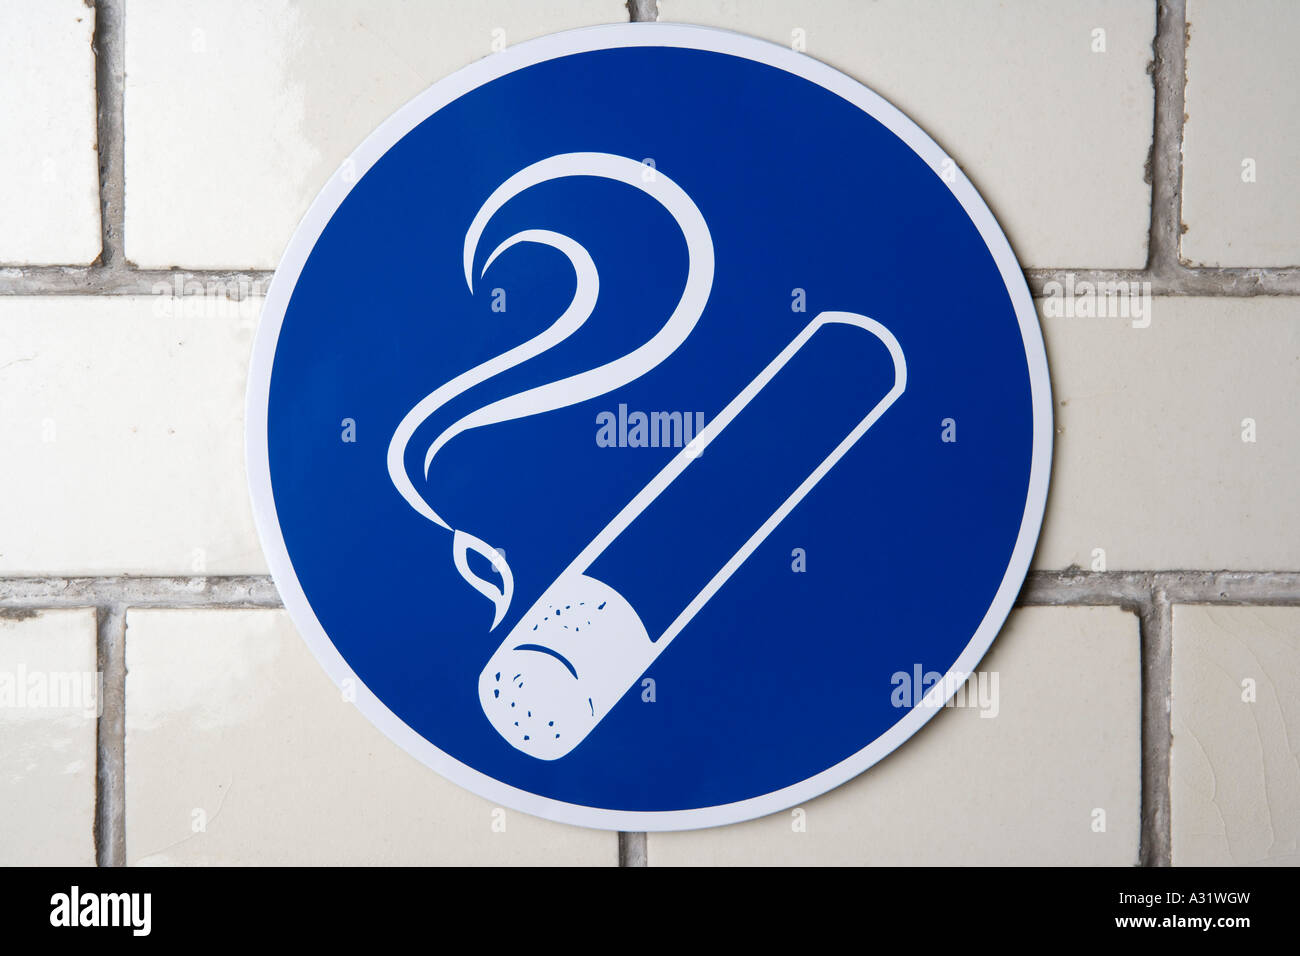 Smoking area sign Stock Photo